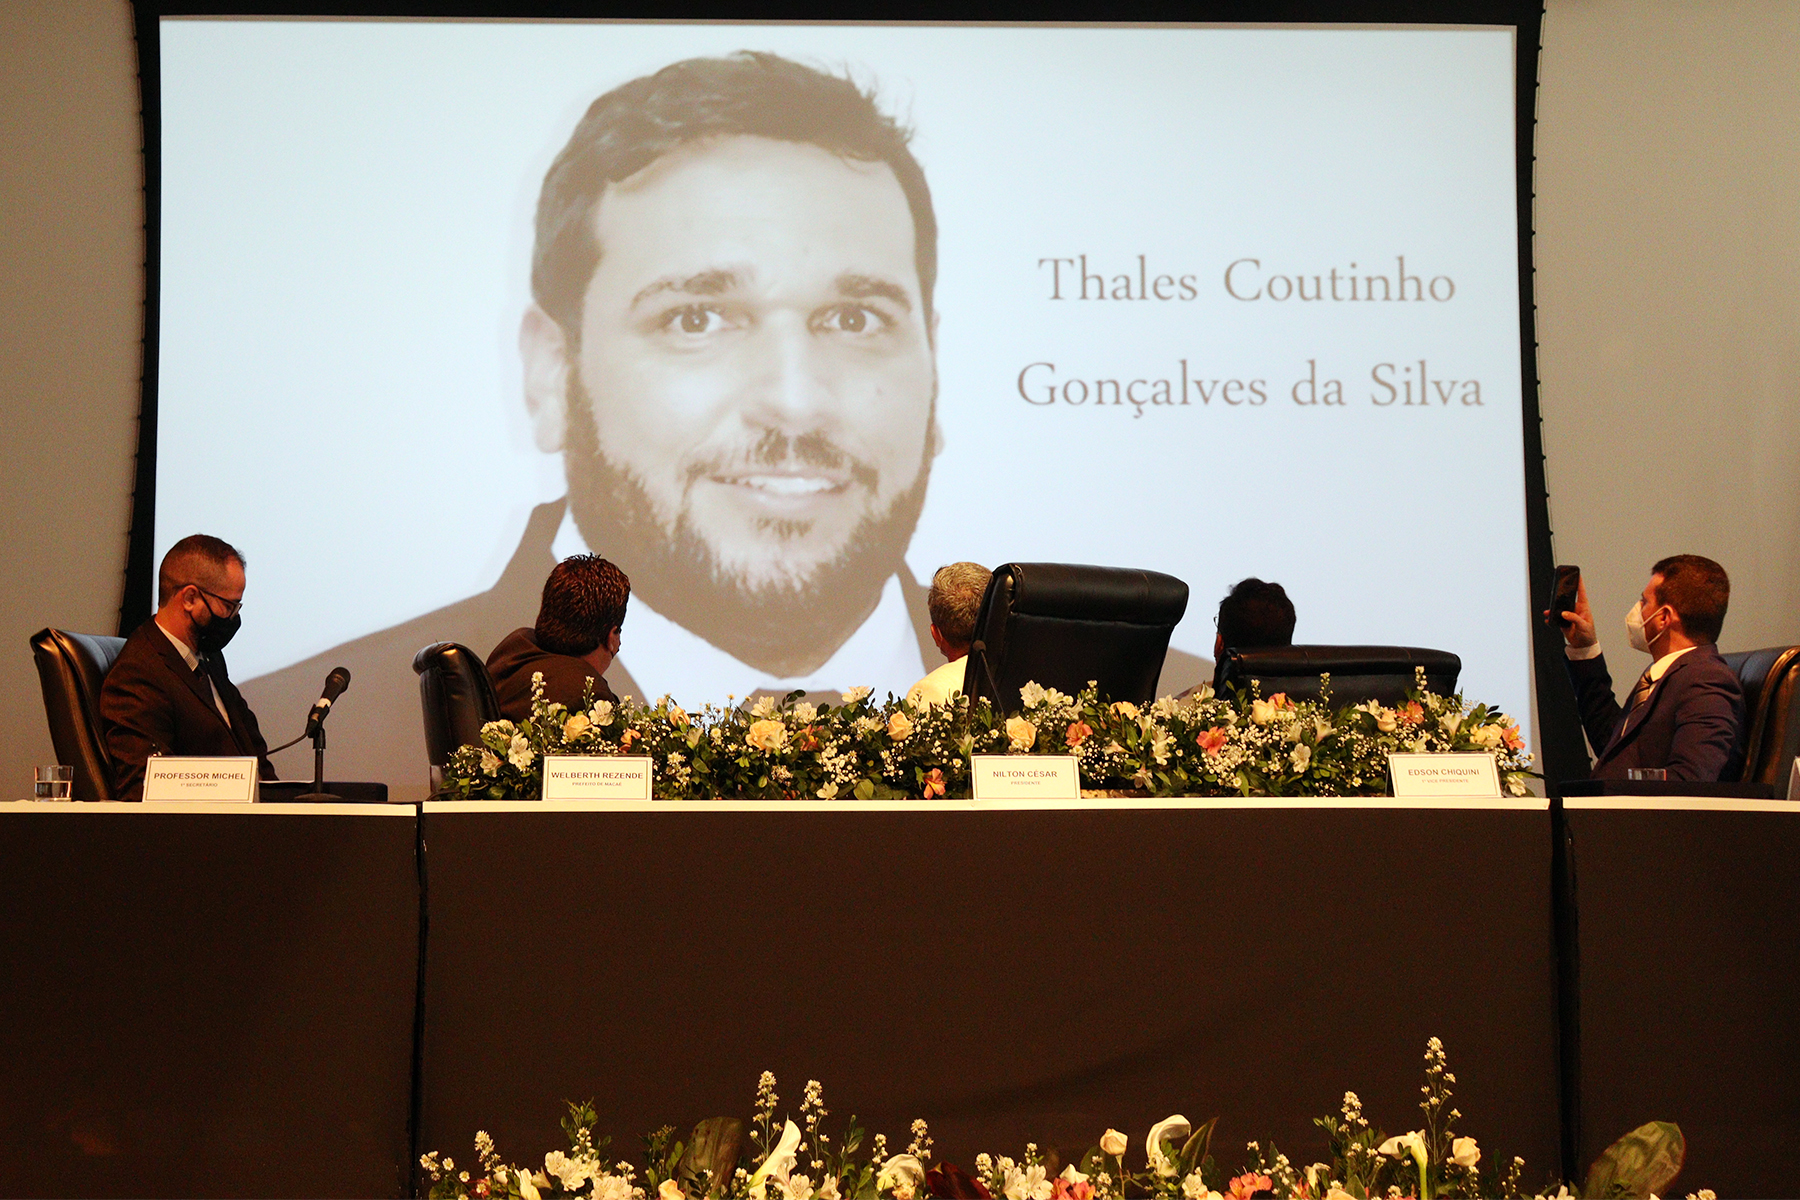 Uma homenagem ao ex-presidente do Legislativo Dr. Eduardo Cardoso e ao seu filho, o vereador Thales Coutinho